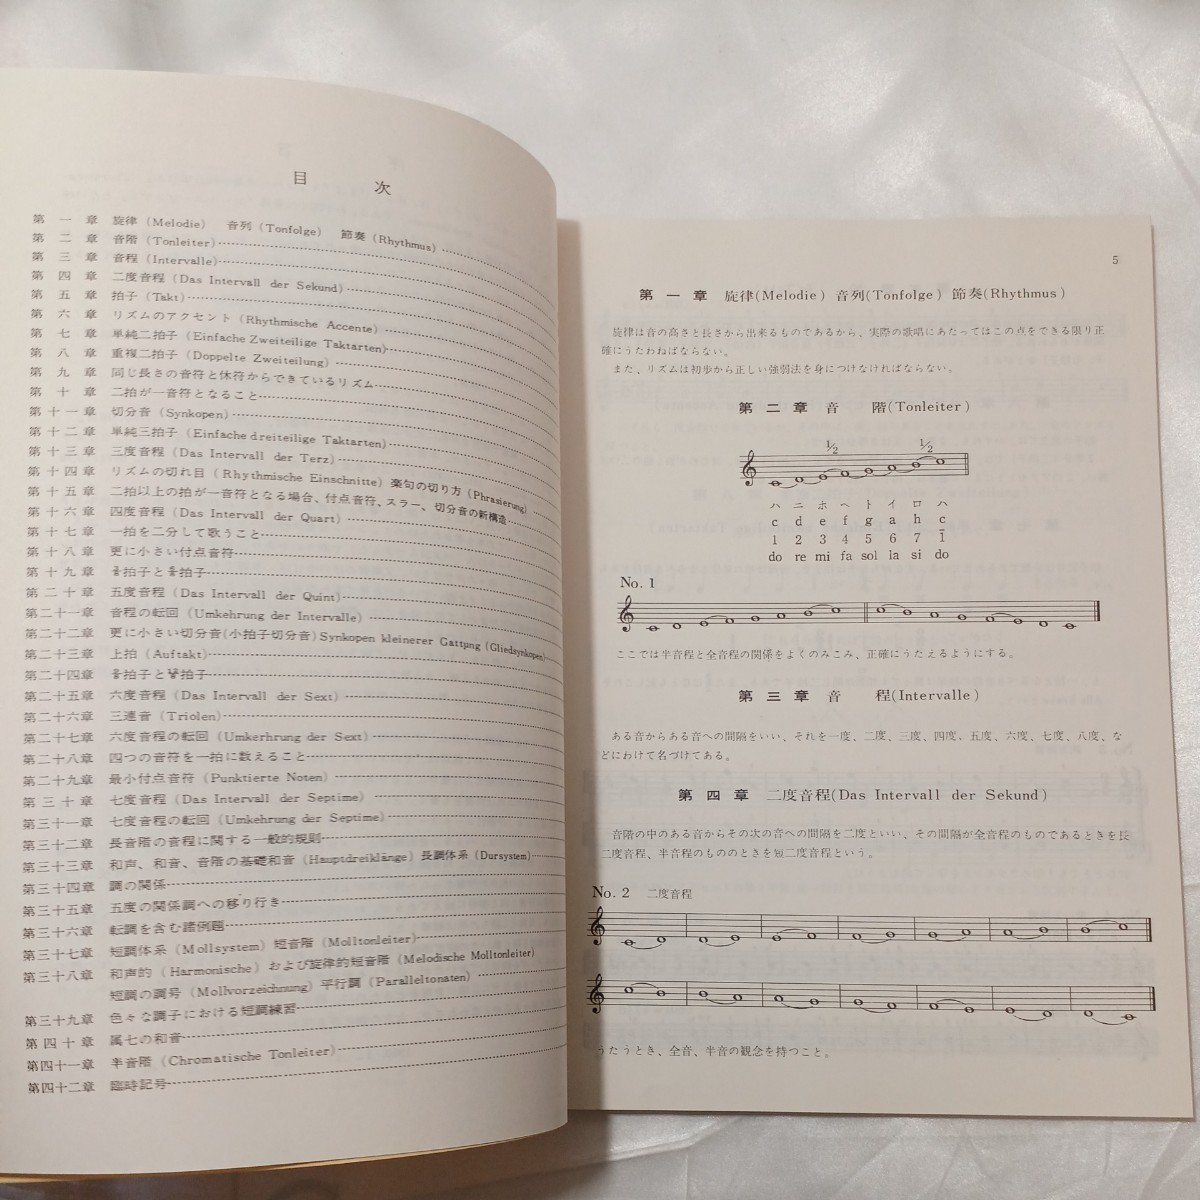 zaa-ma03♪コールユーブンゲン 巻1 畑中良輔 解説 (474) 楽譜(1975年) 河合楽器製作所_画像2